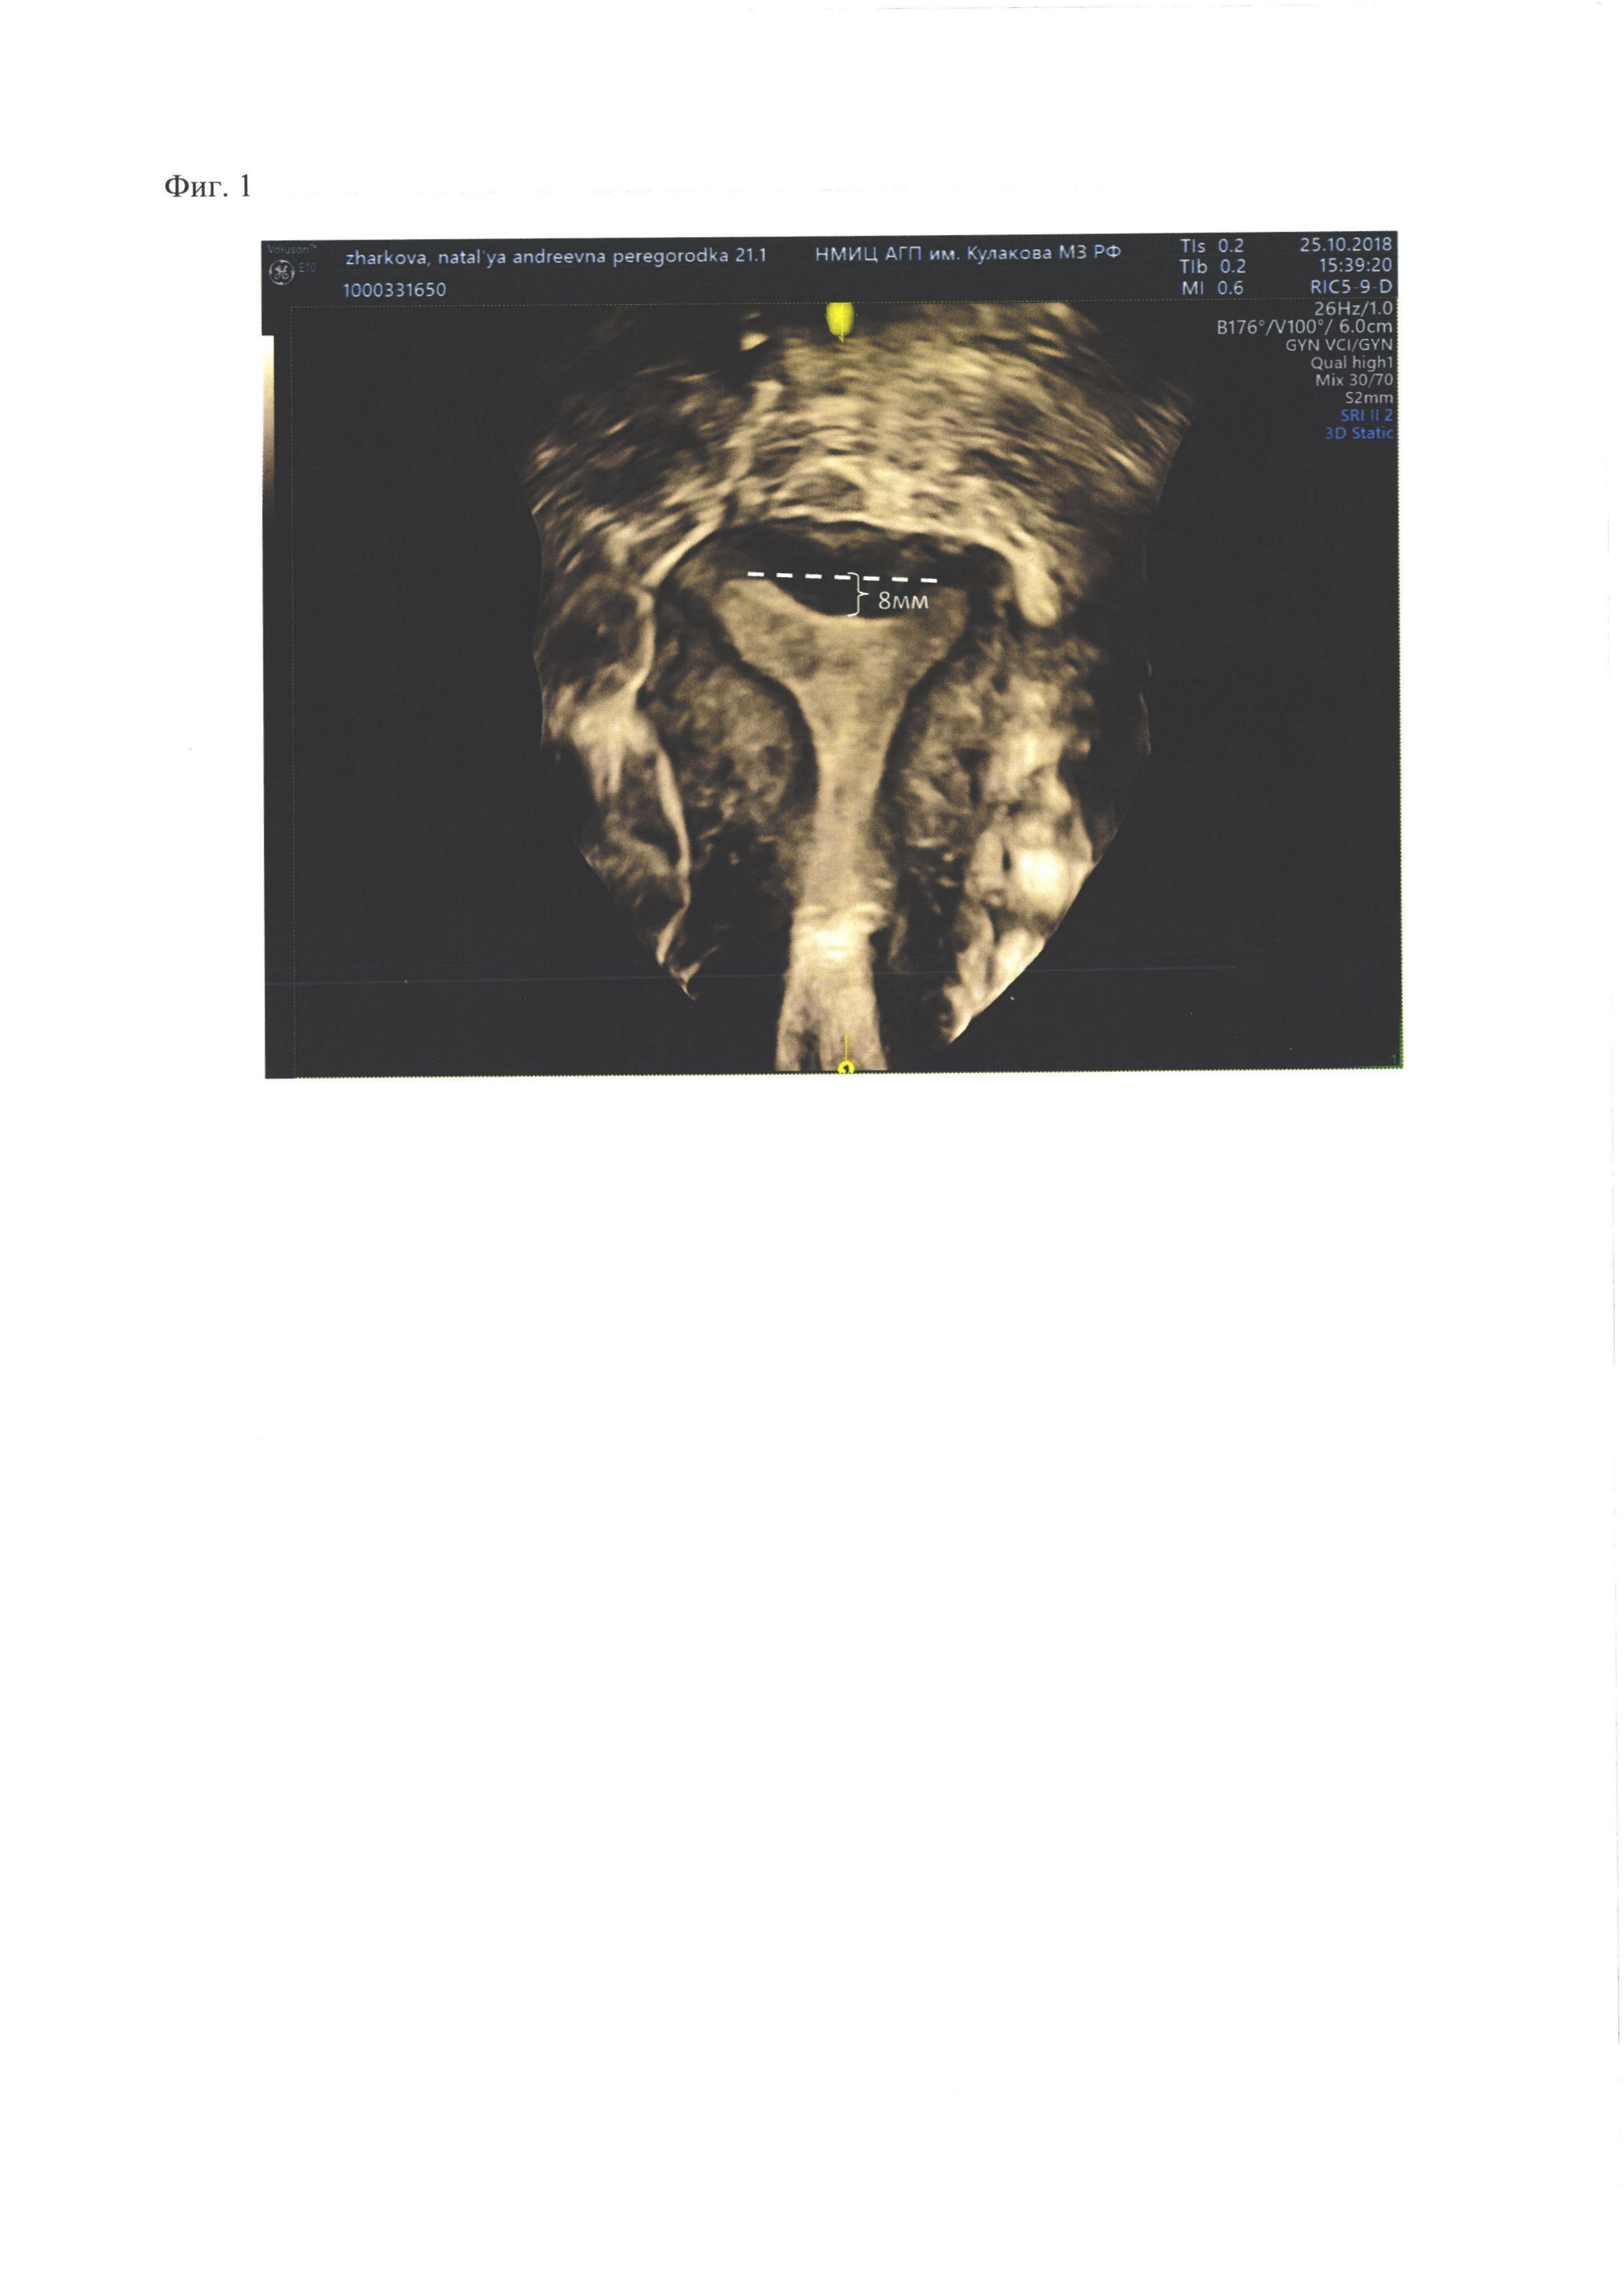 Метод 3D ультразвукового сканирования матки для дифференциации внутриматочной перегородки седловидной формы и определения сосудистого кровотока с целью оперативного лечения